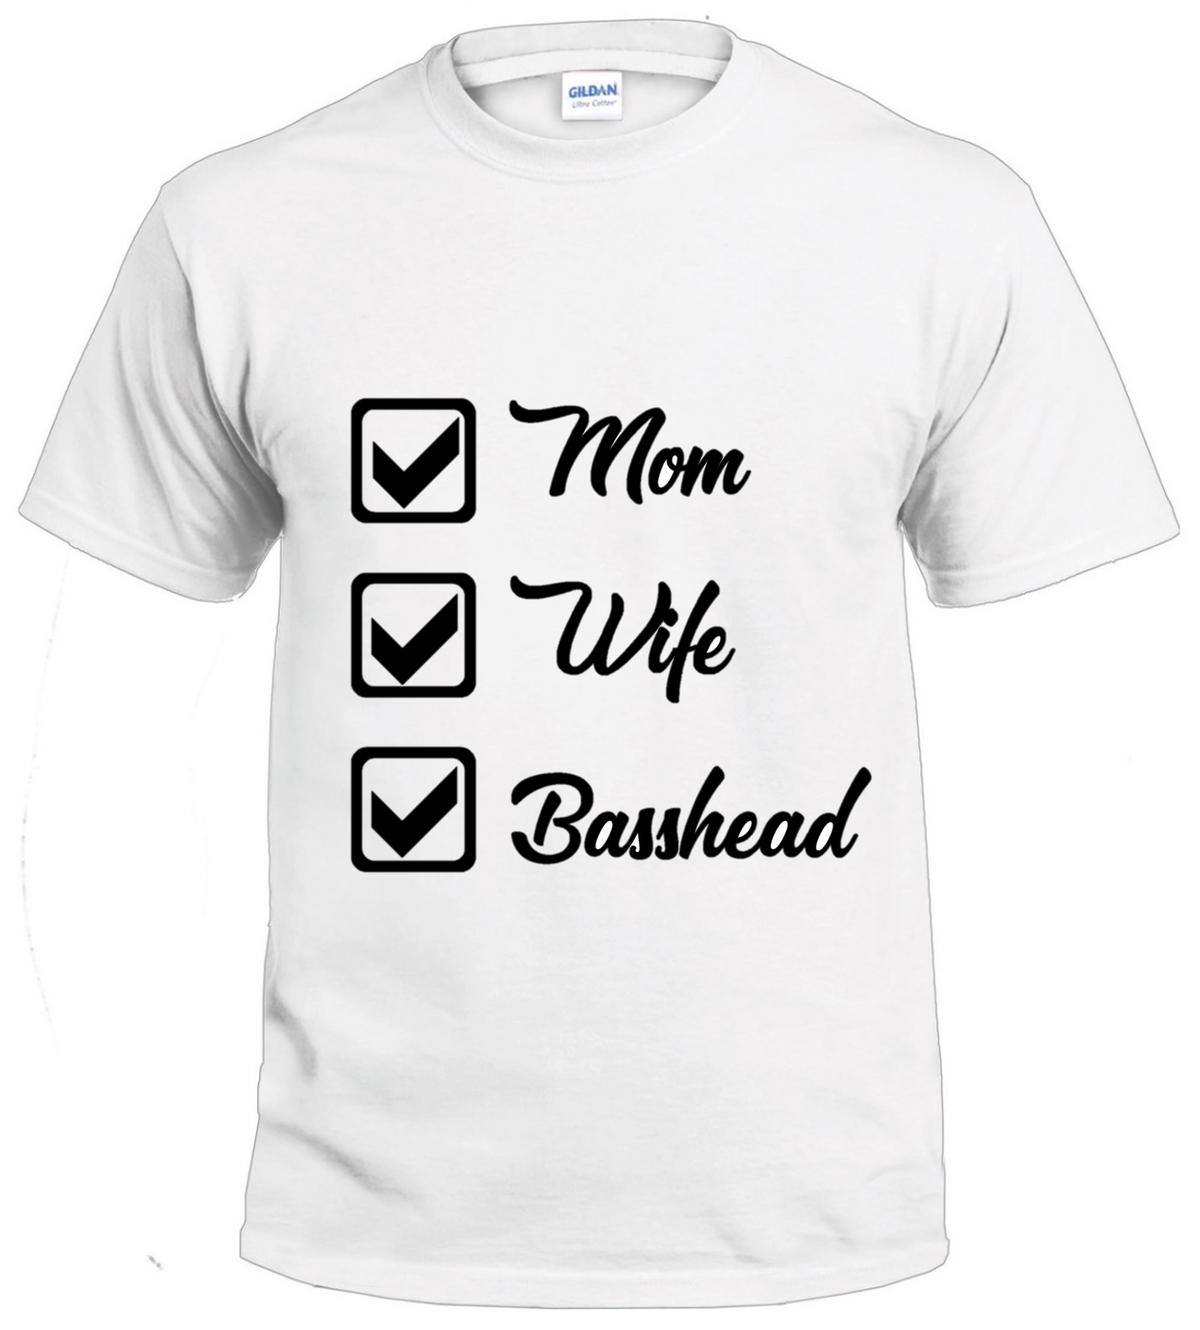 Mom Wife Basshead tshirt